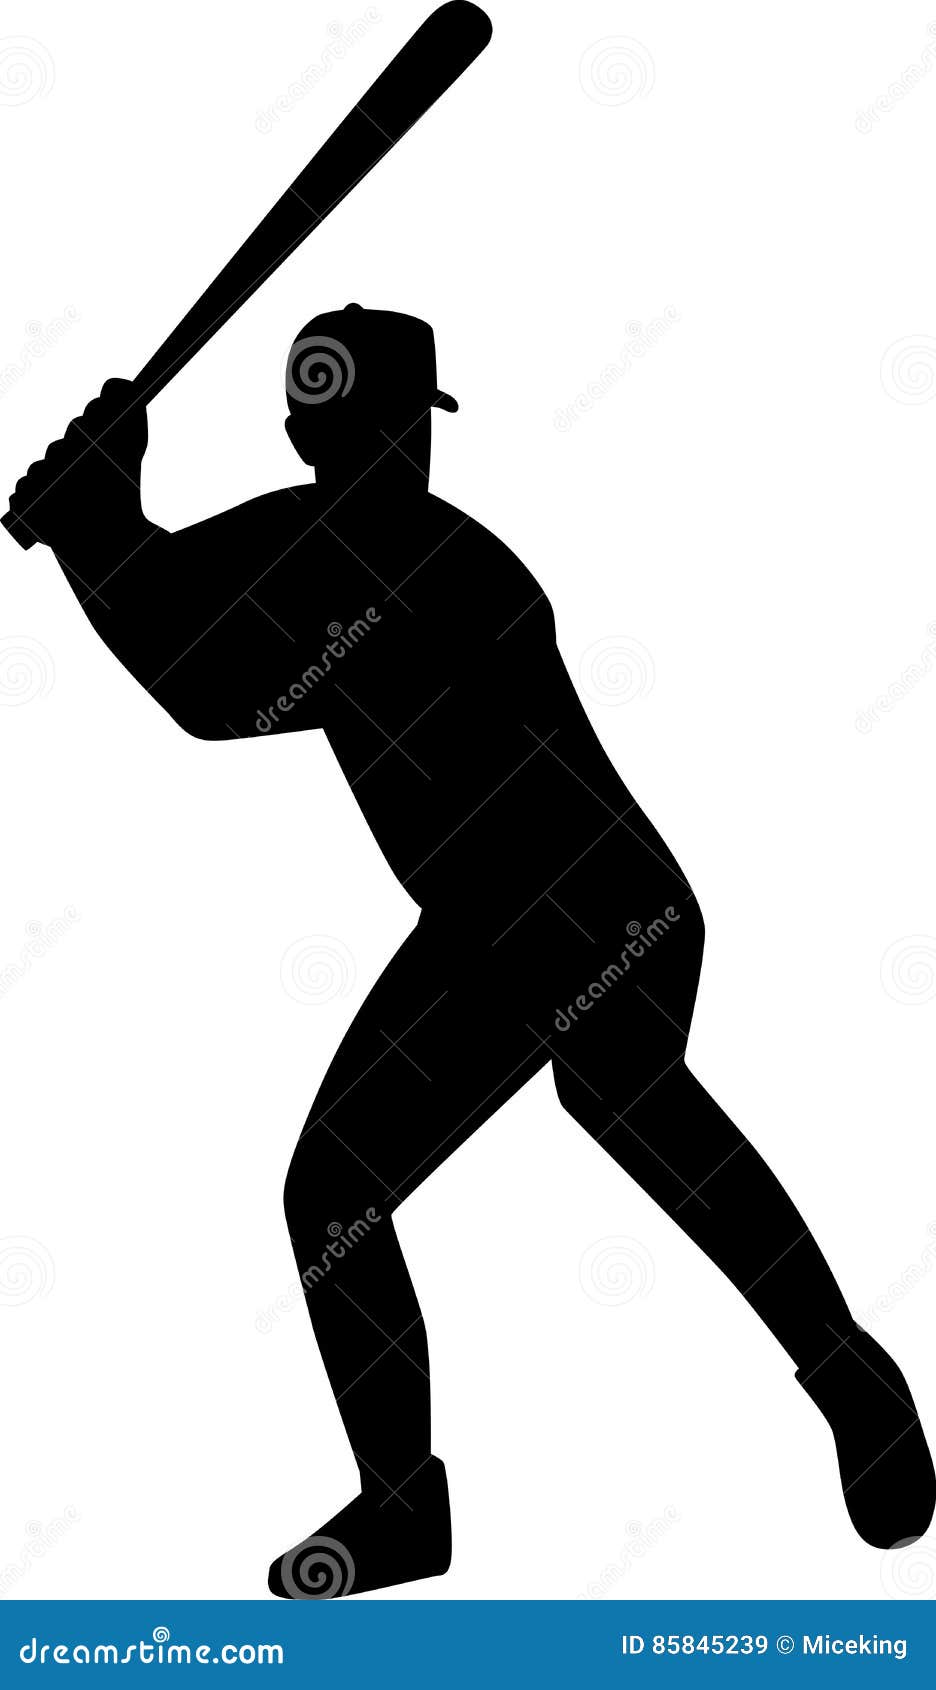 Baseball Batter Silhouette stock vector. Illustration of batter - 85845239